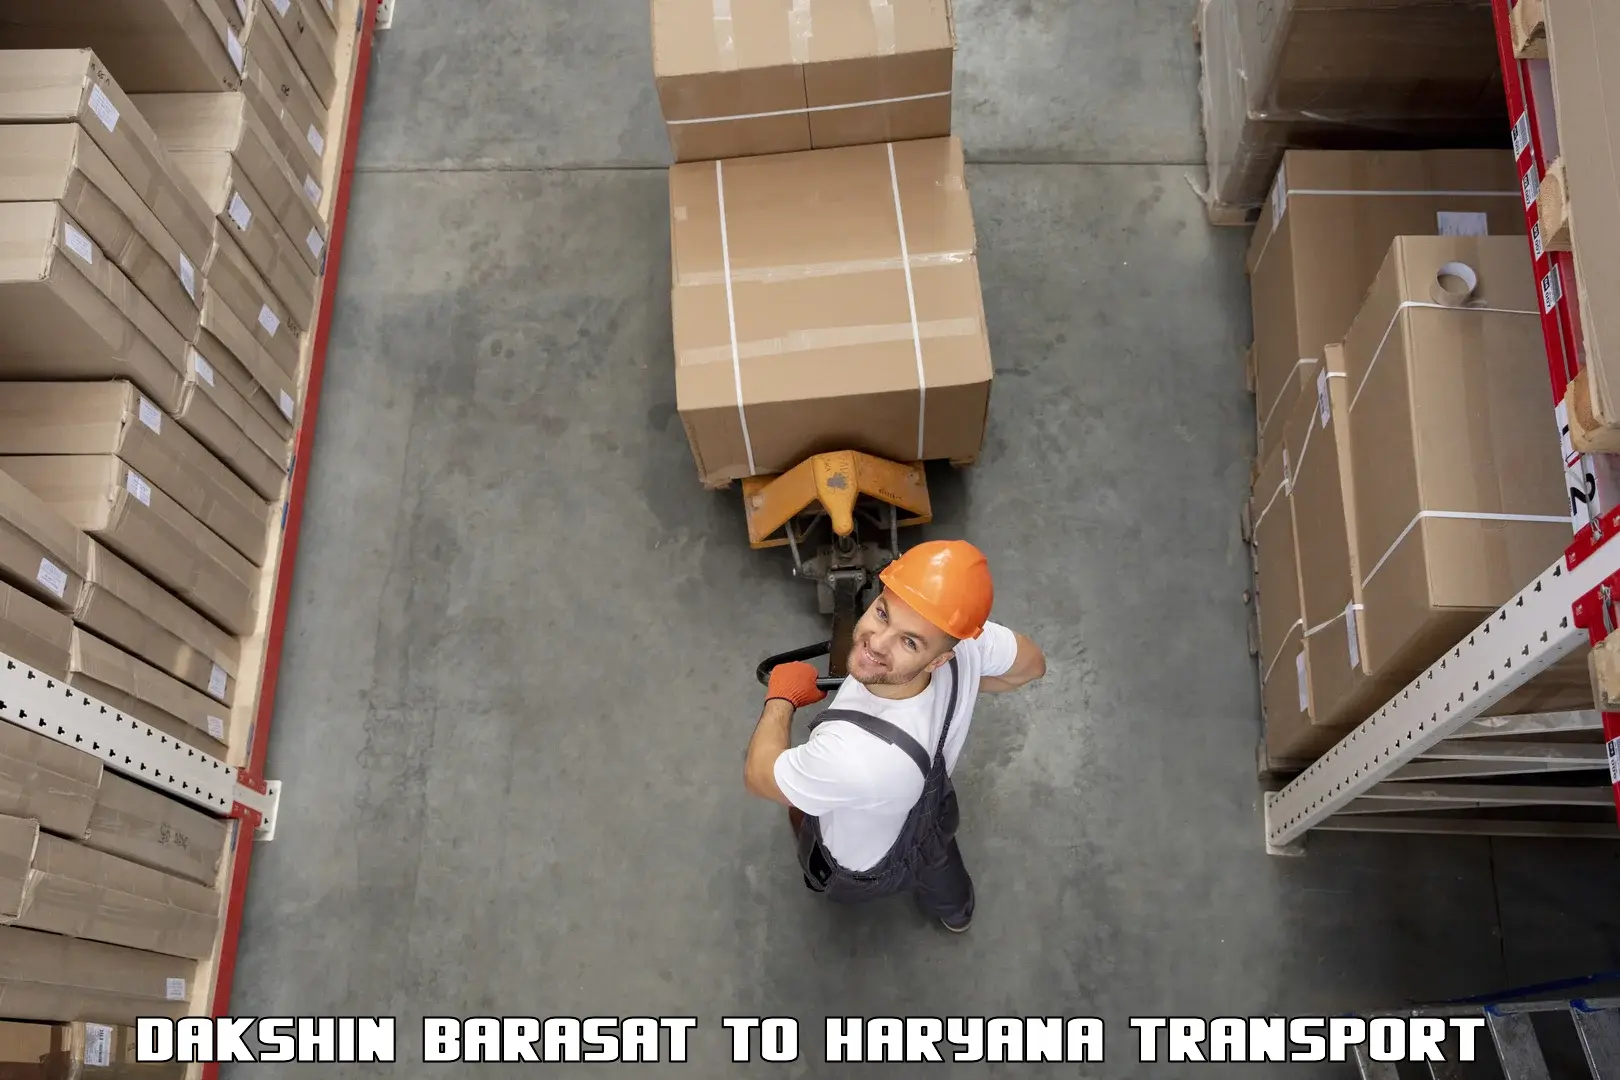 Luggage transport services Dakshin Barasat to Odhan